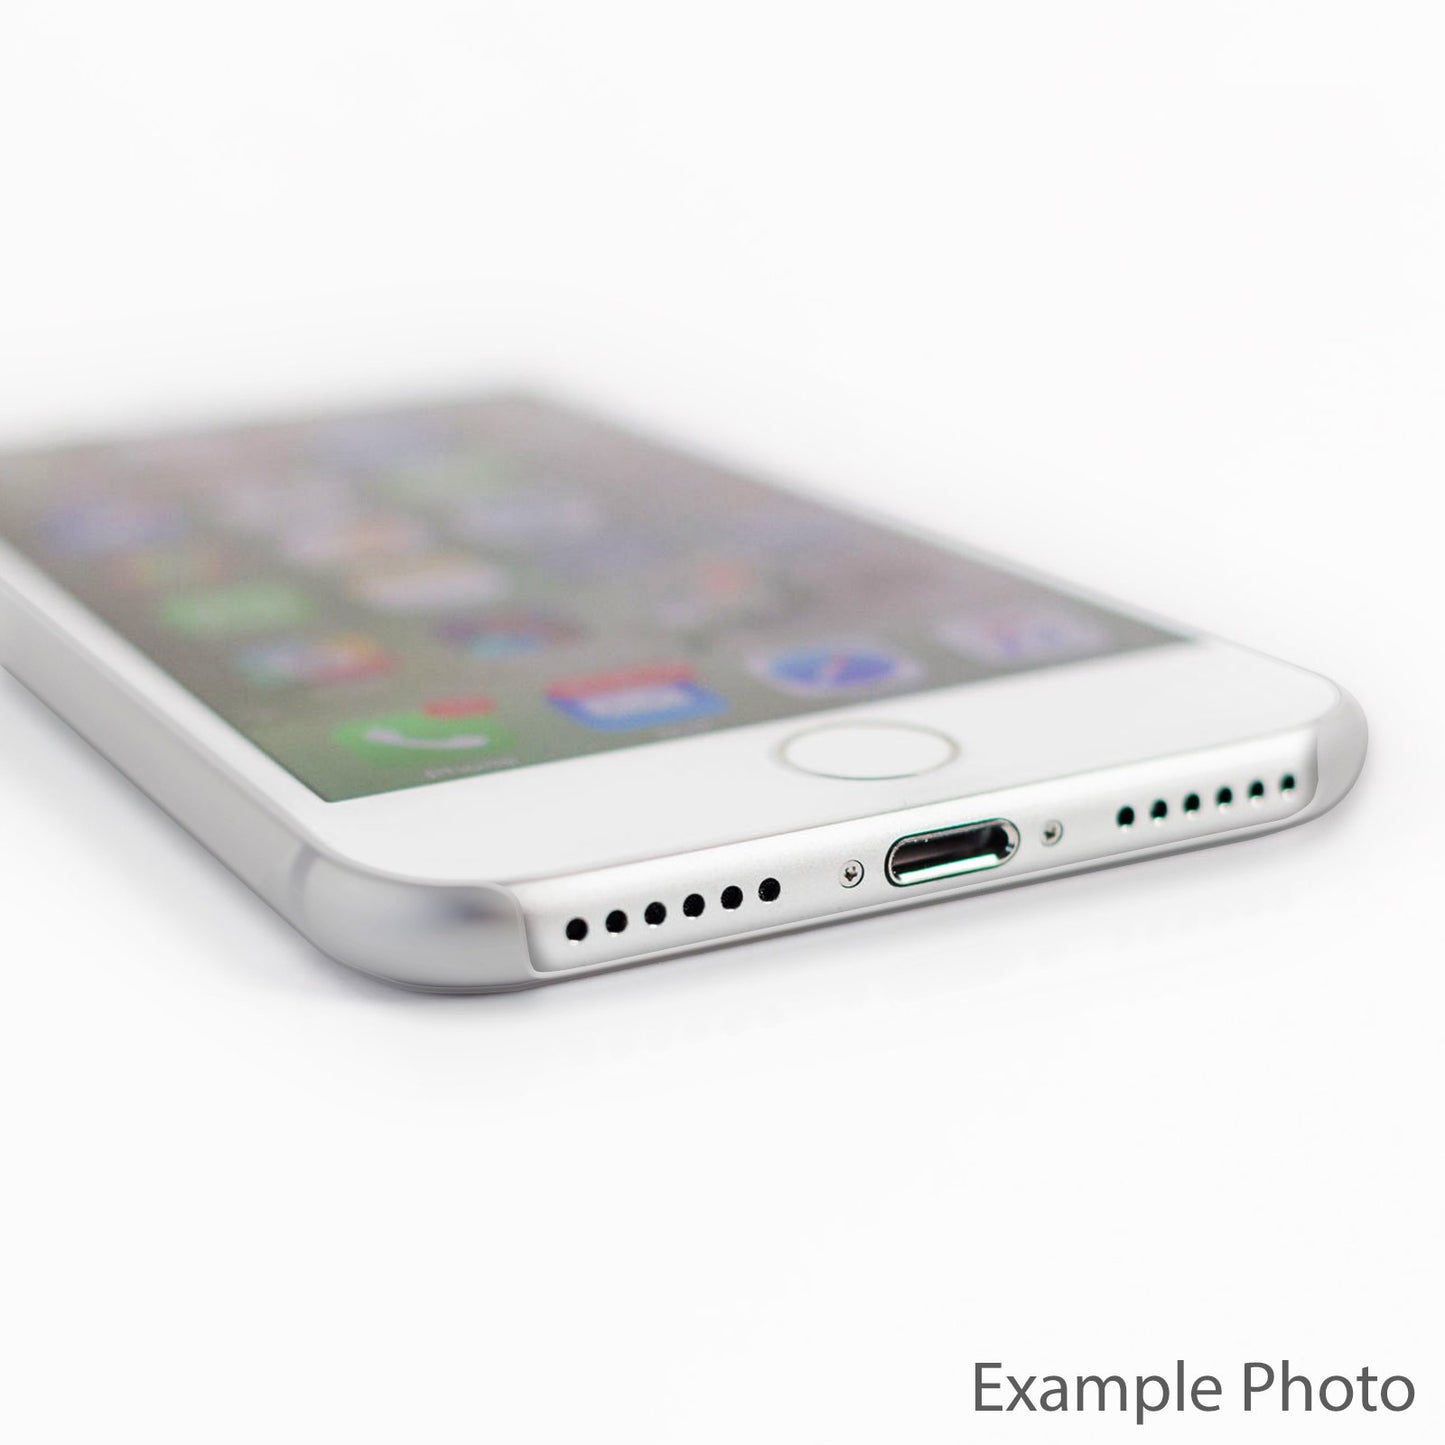 Personalisiertes Apple iPhone Hard Case mit schwarzer Initiale auf Geparden-Print